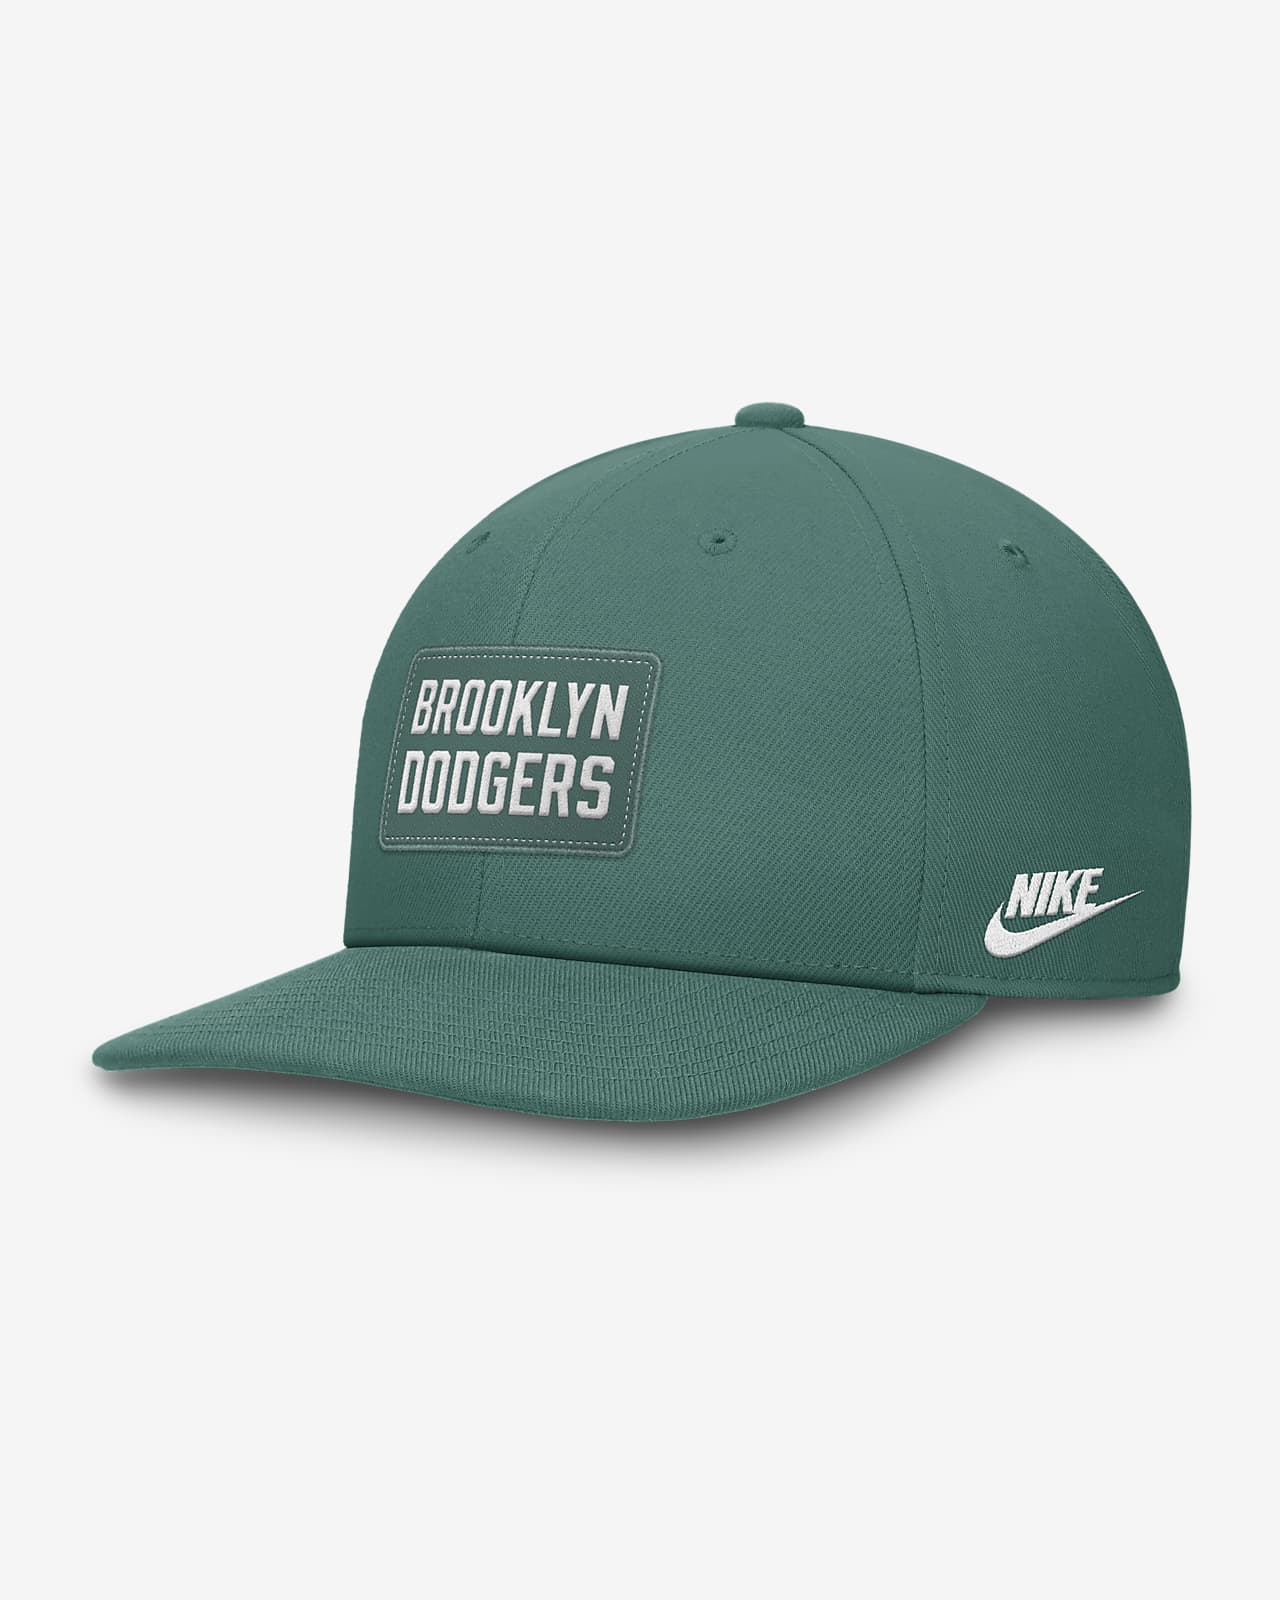 Brooklyn Dodgers Bicoastal Pro Men's Nike Dri-FIT MLB Adjustable Hat